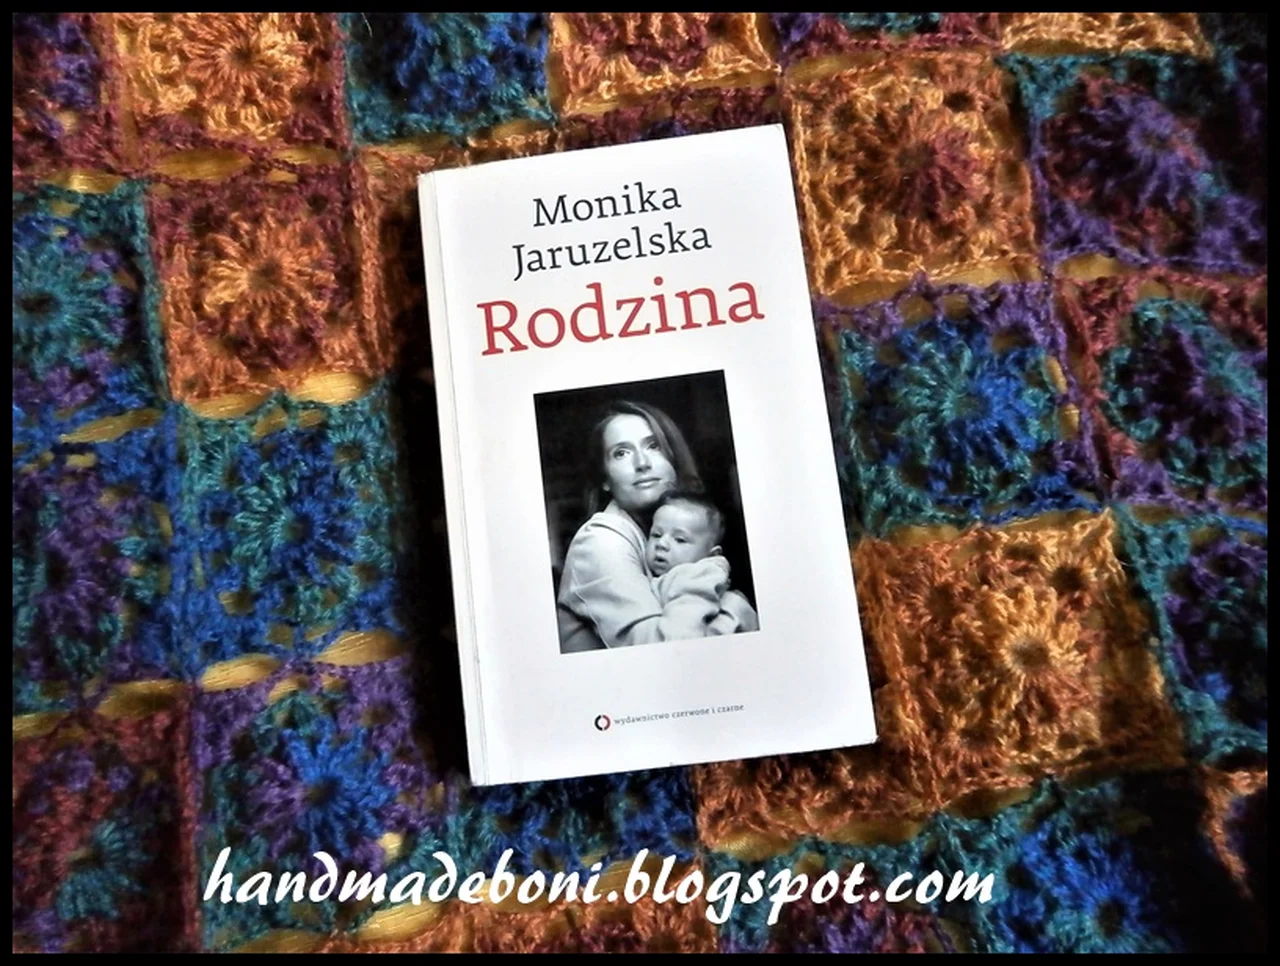 Recenzja książki : "Rodzina " Monika jaruzelska